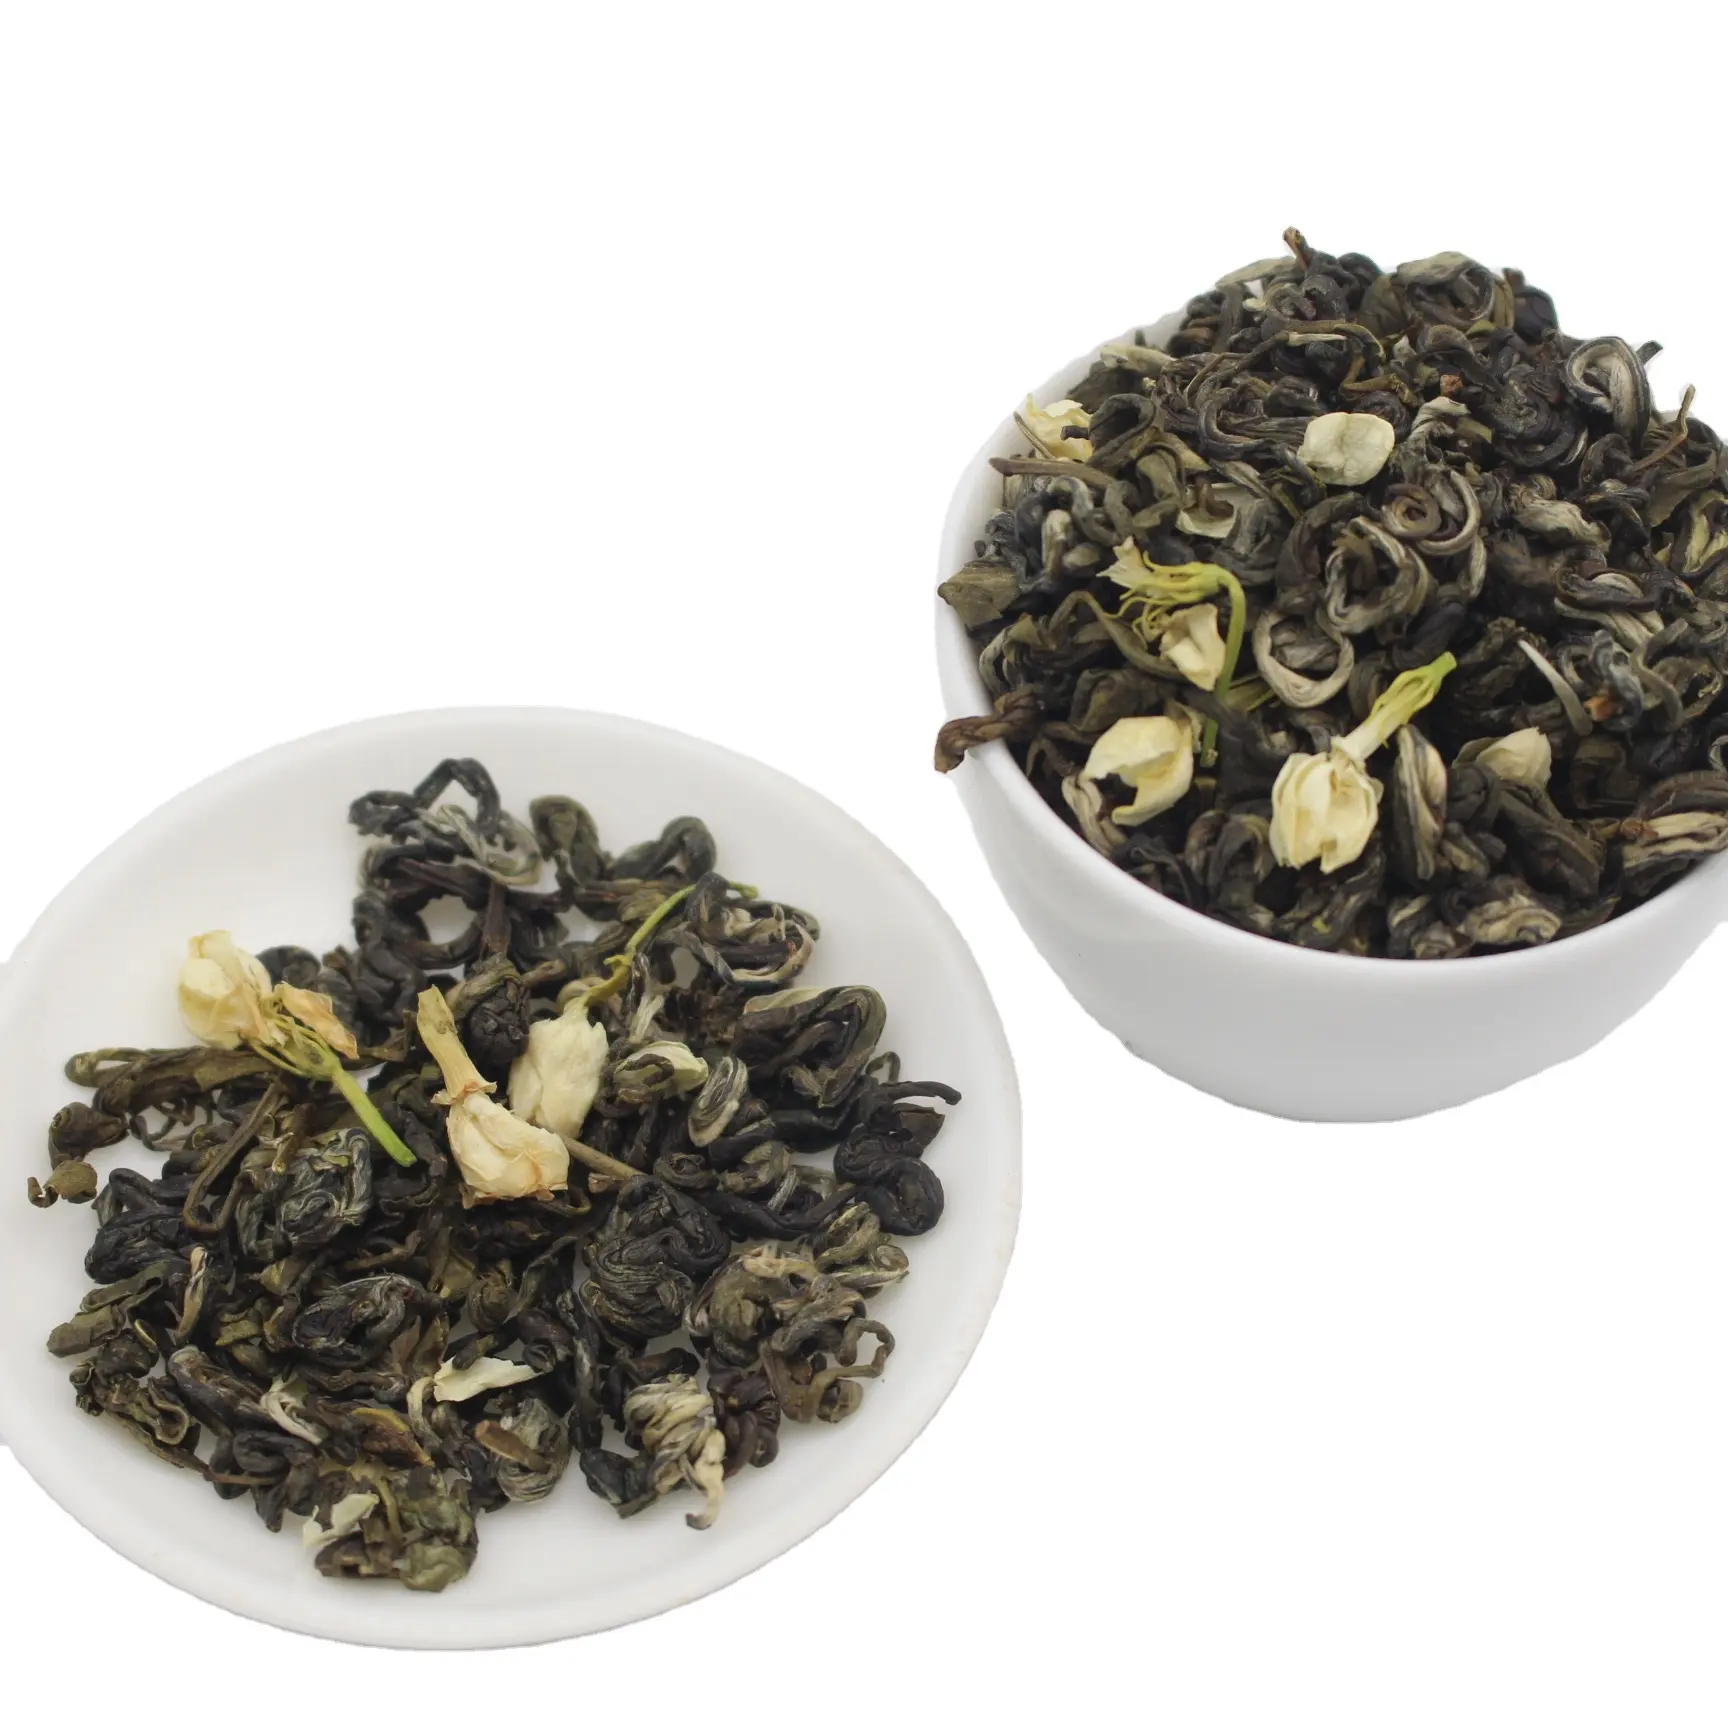 Jasmine ingredientes do saco de chá verde, com certificação haccp para fazer bolhas de tecido, chá jasmine